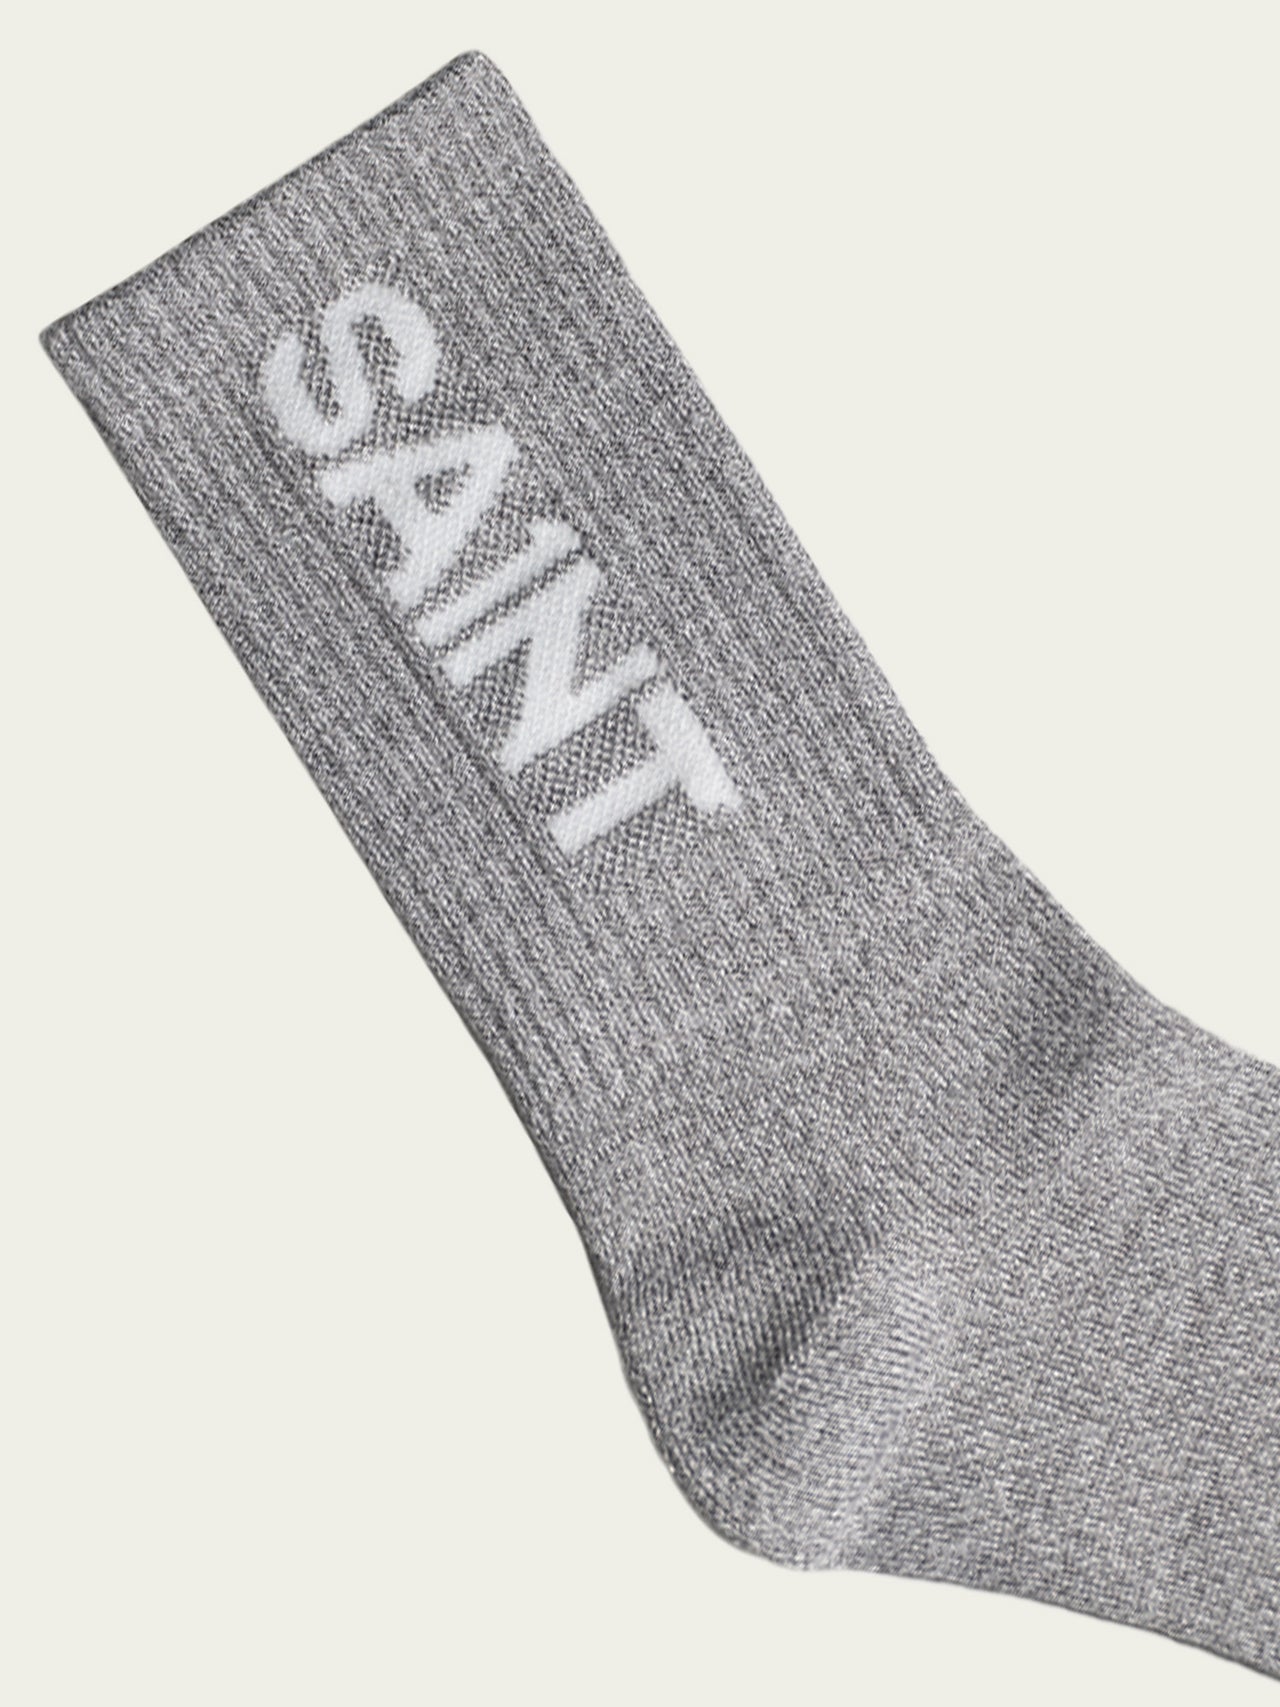 SA1NT Bamboo 圆袜 - 灰色